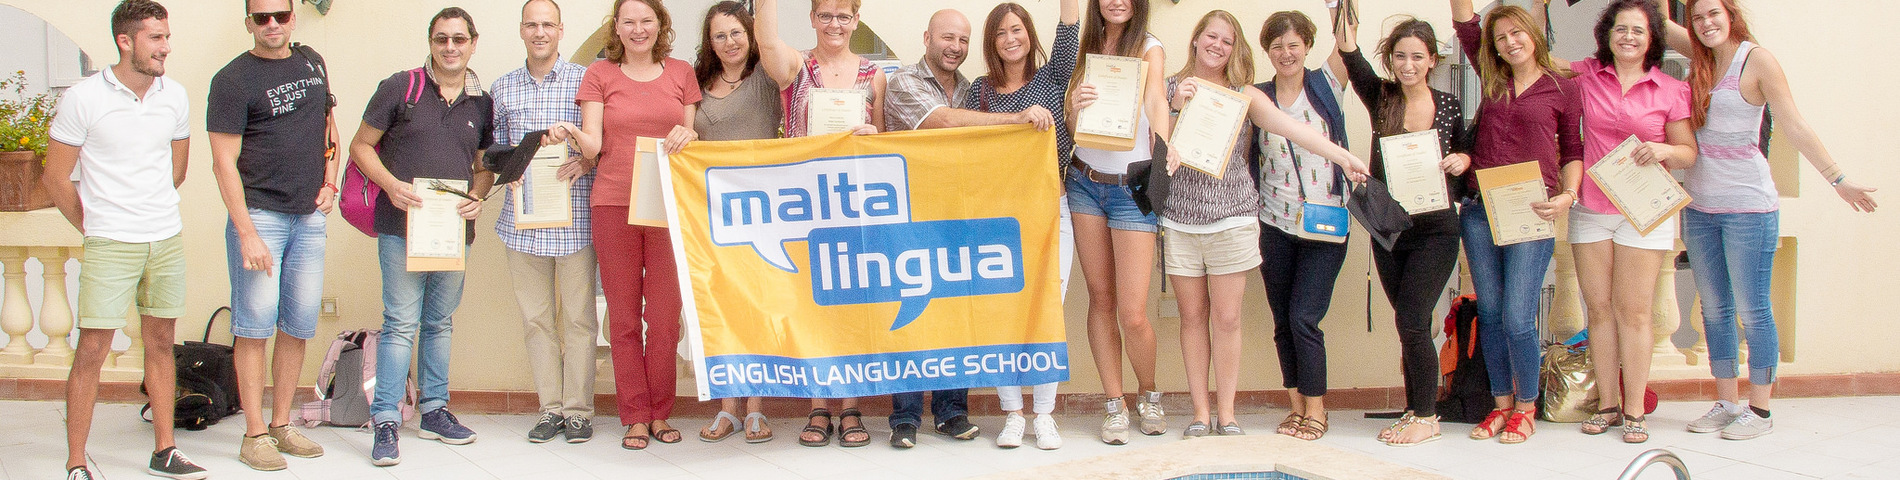 Maltalingua School of English picture 1